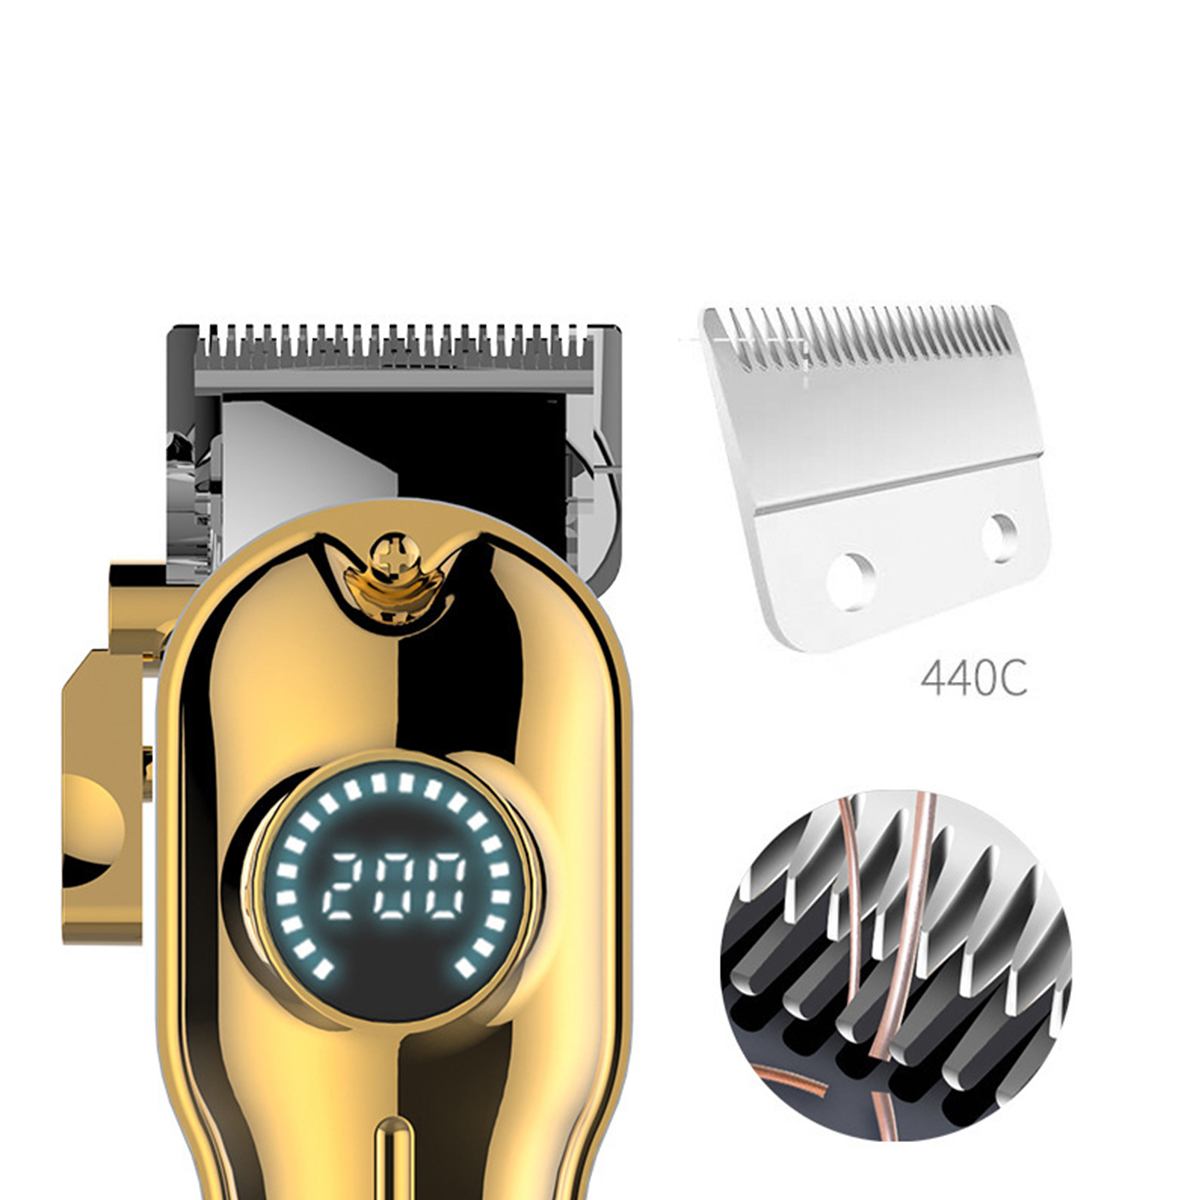 mit Haarschneider SHAOKE 2000mAh Edelstahlklingen LCD-Anzeige ultradünne Präzisions-Haarschneider Elektrotrimmer Gold Akku